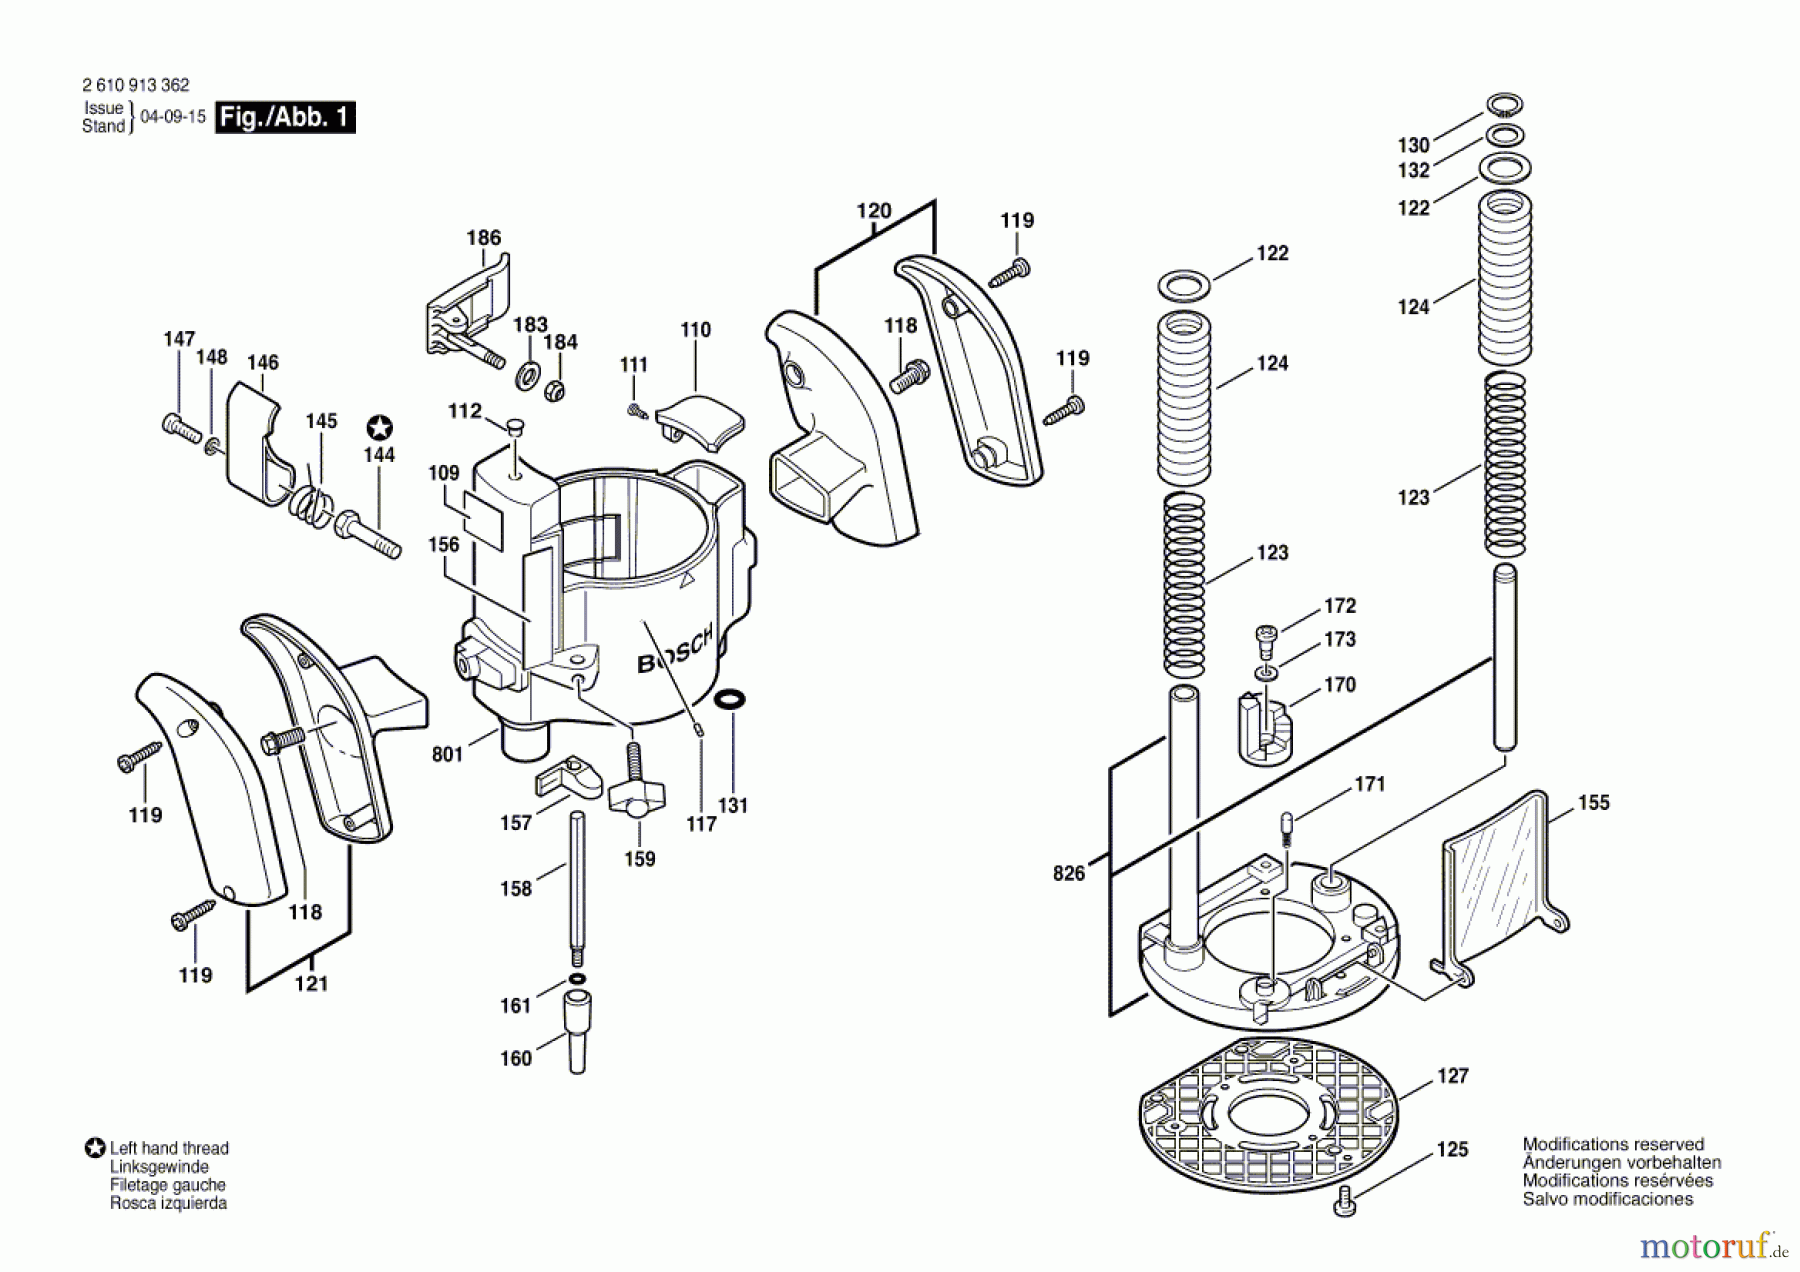  Bosch Werkzeug Basiseinheit RA1166 Seite 1